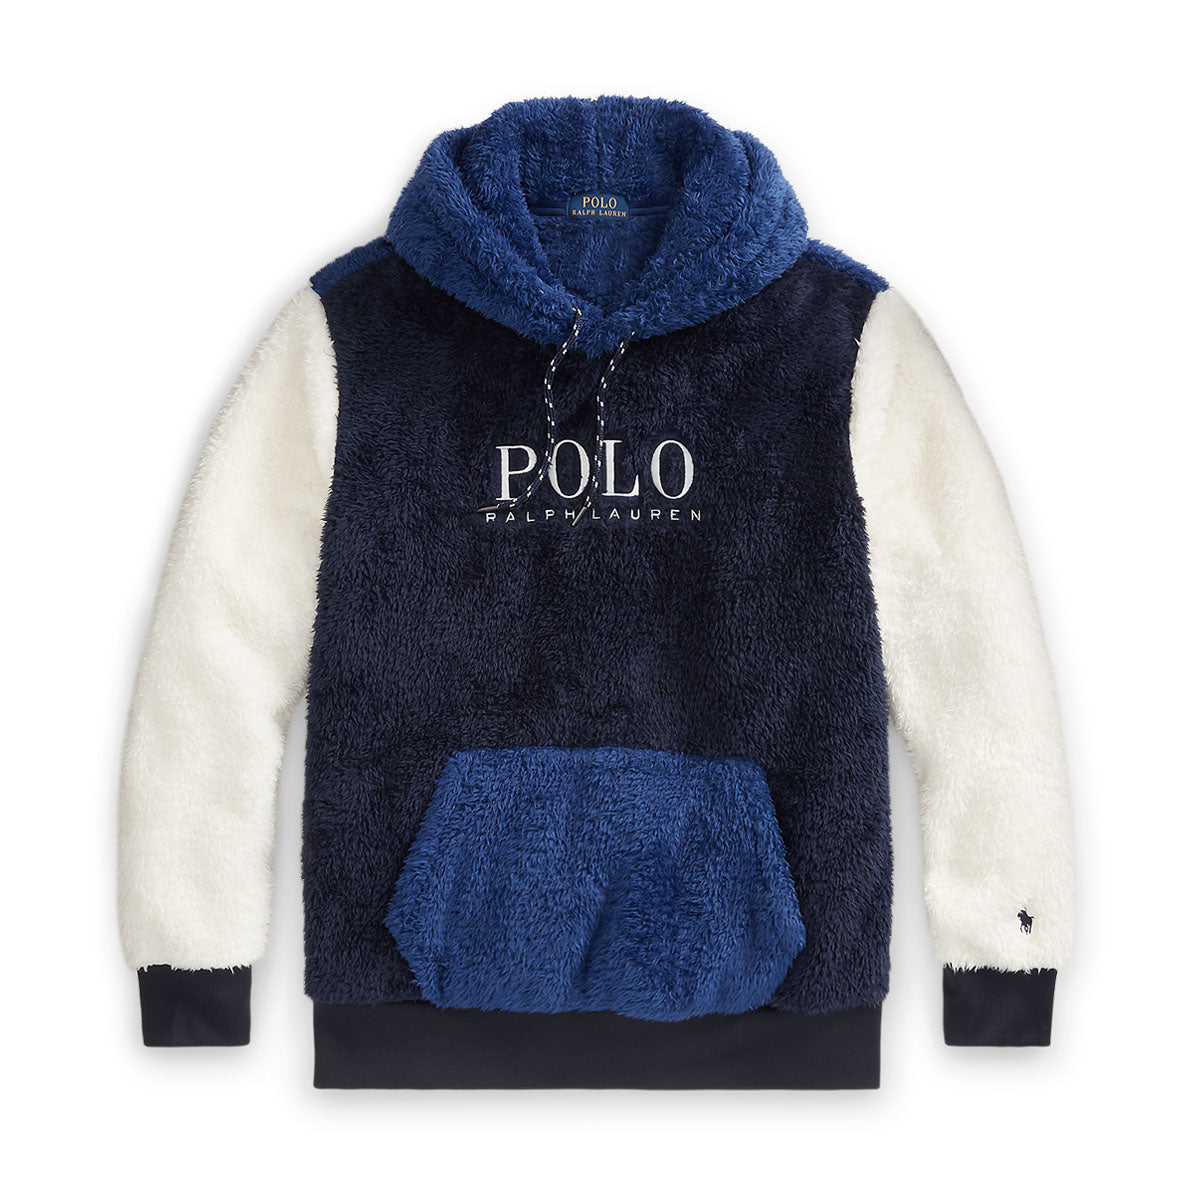 Polo Ralph Lauren - Sherpa Fleece Hoodie in Navy/Blue/Cream | Nigel Clare